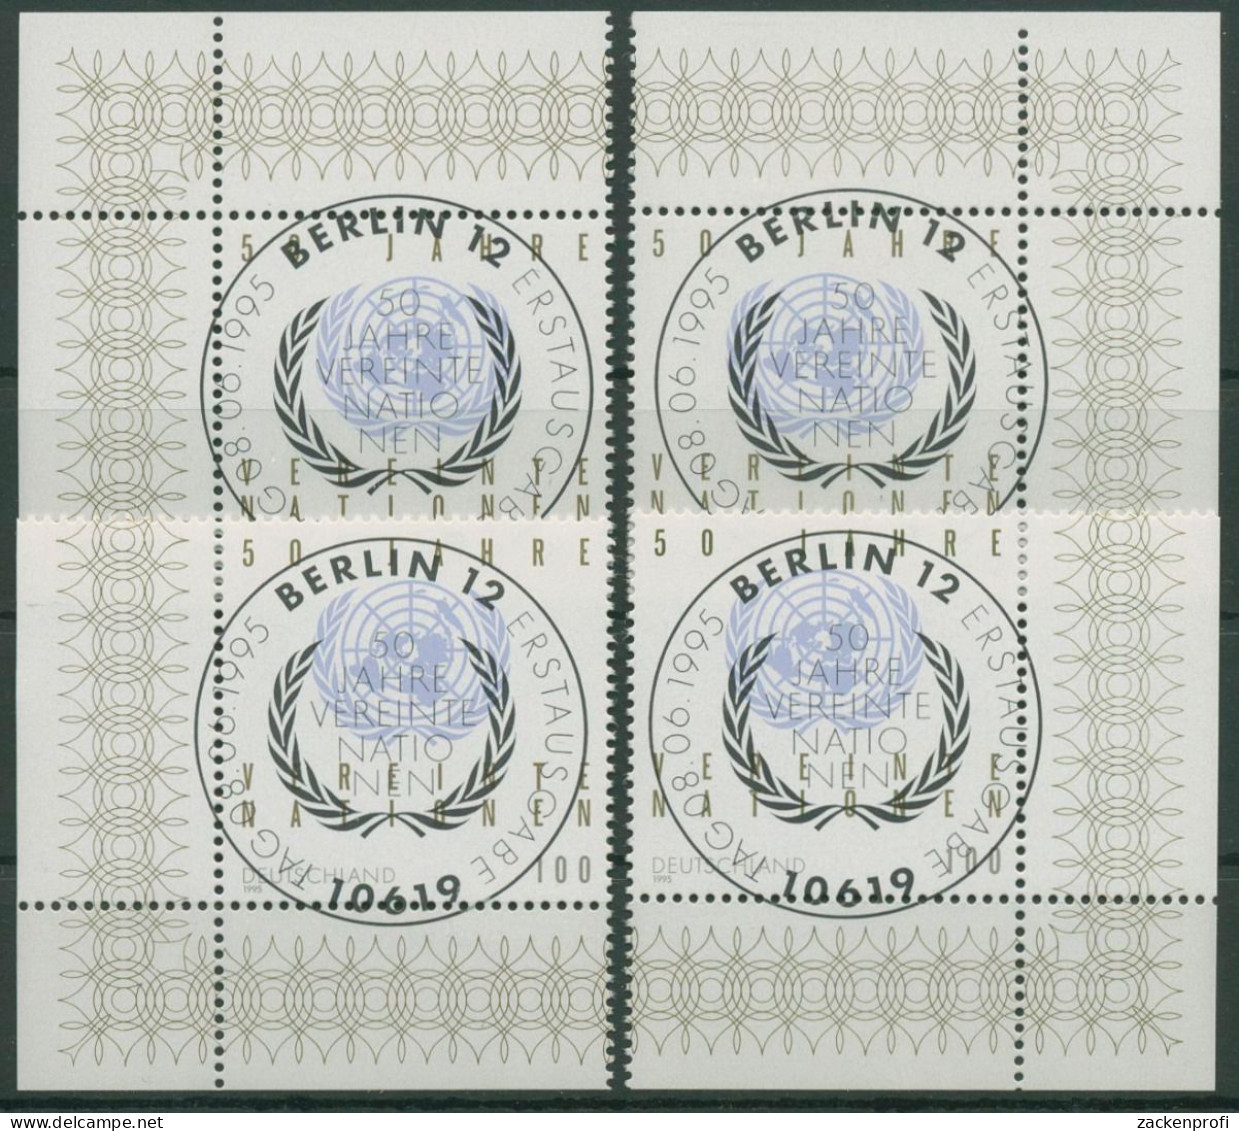 Bund 1995 Vereinte Nationen UNO 1804 Alle 4 Ecken Mit TOP-ESST Berlin (E2441) - Used Stamps